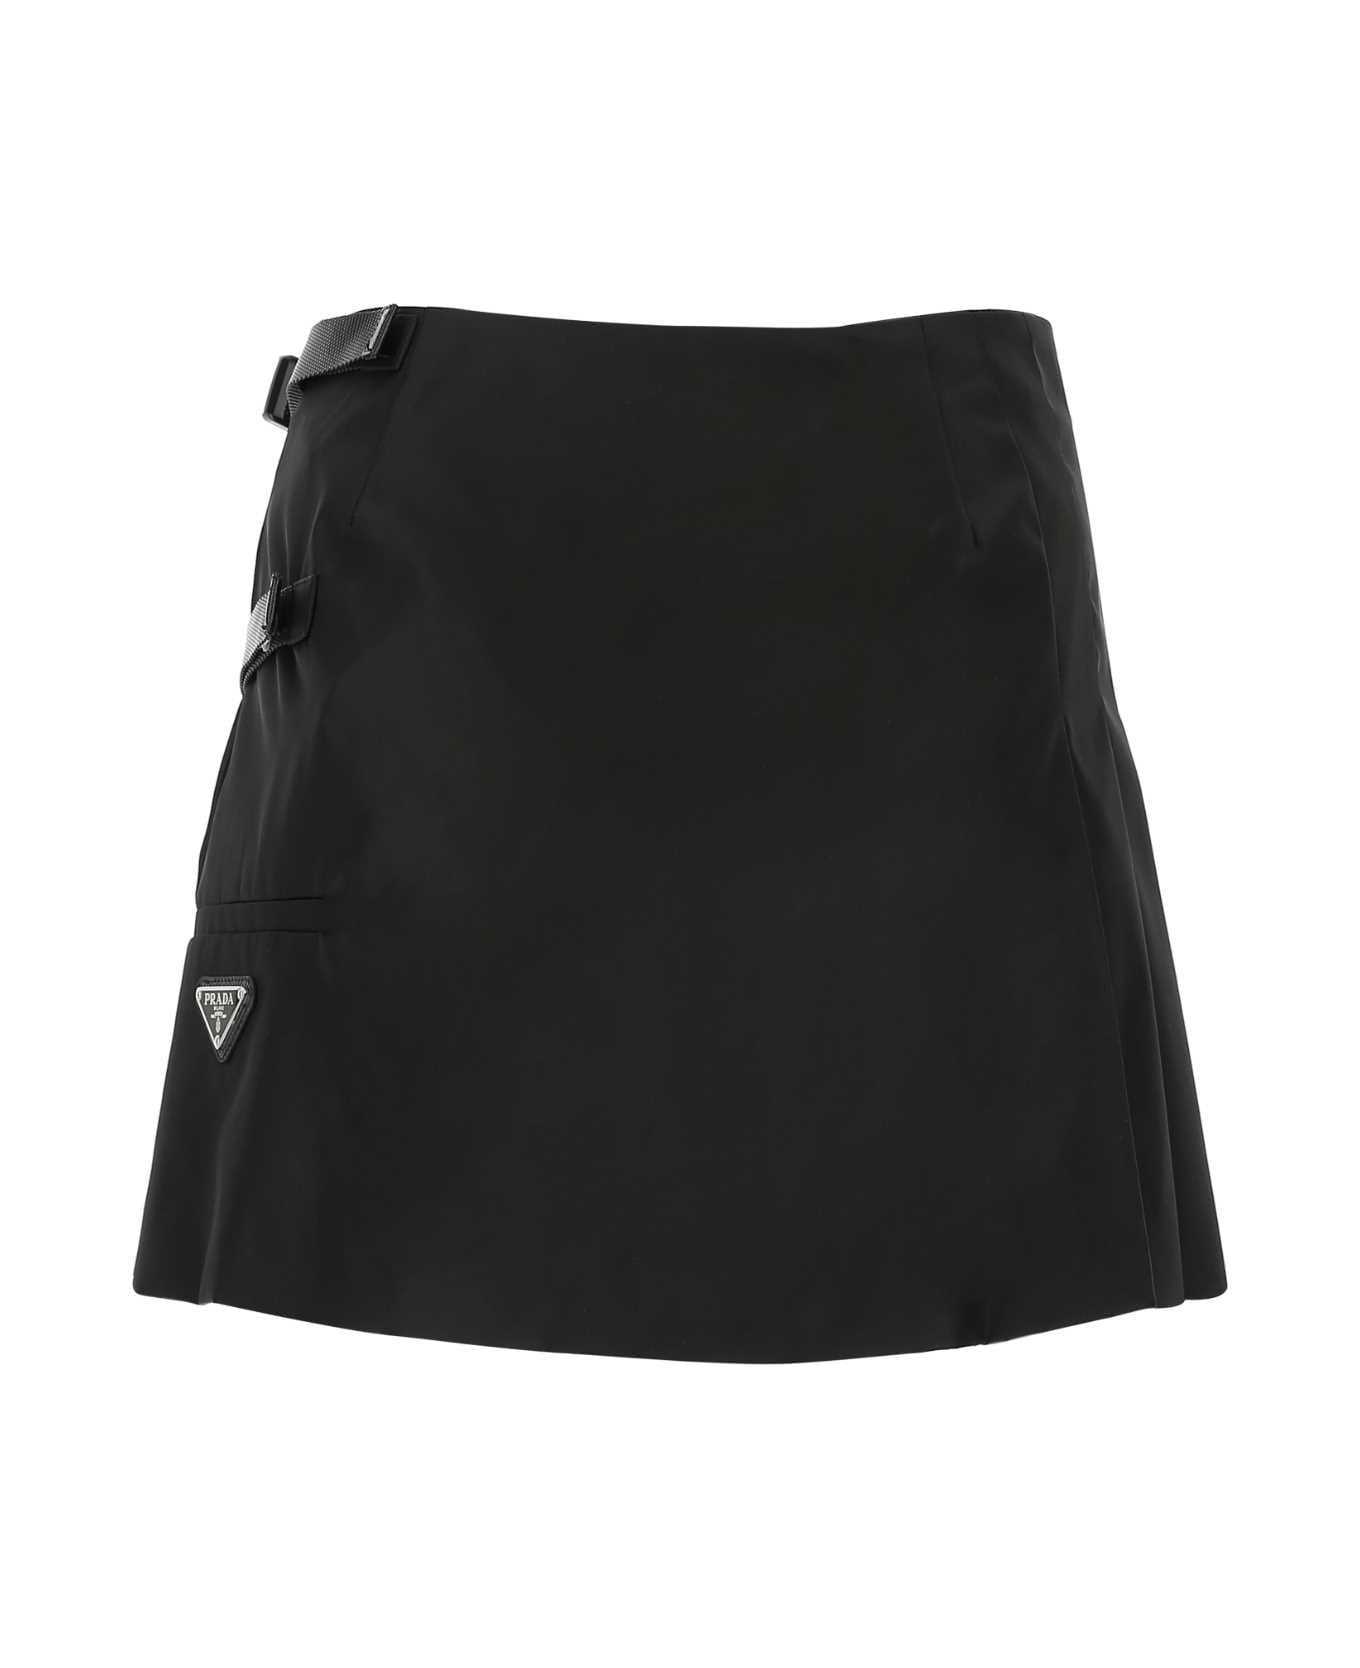 Prada Black Nylon Mini Skirt - F0002 スカート